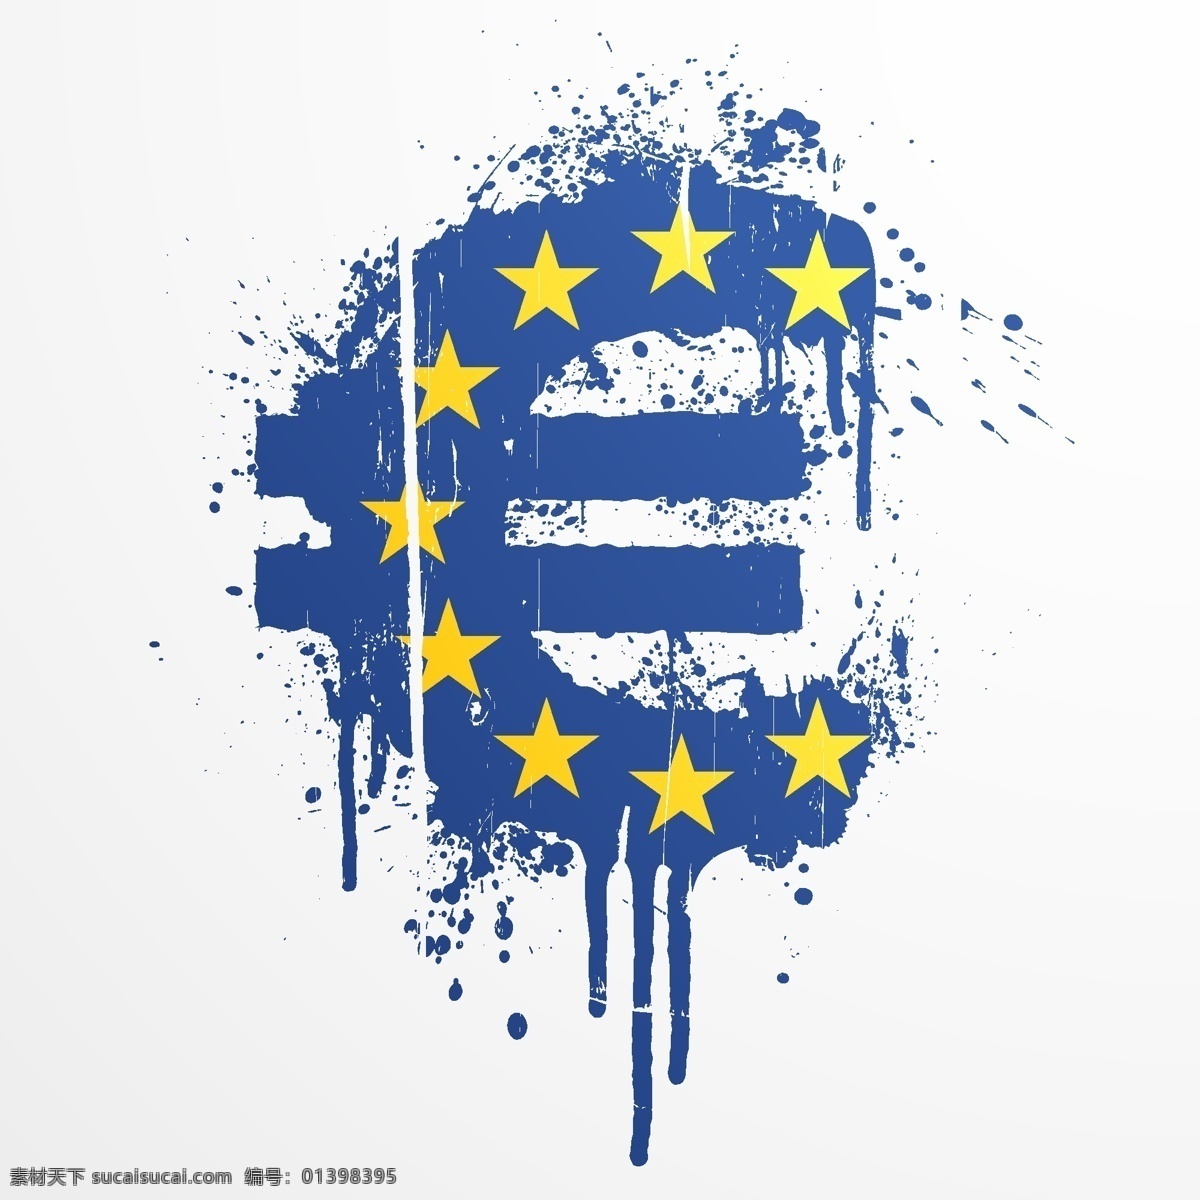 欧盟 国家 旗帜 矢量图 青色 天蓝色